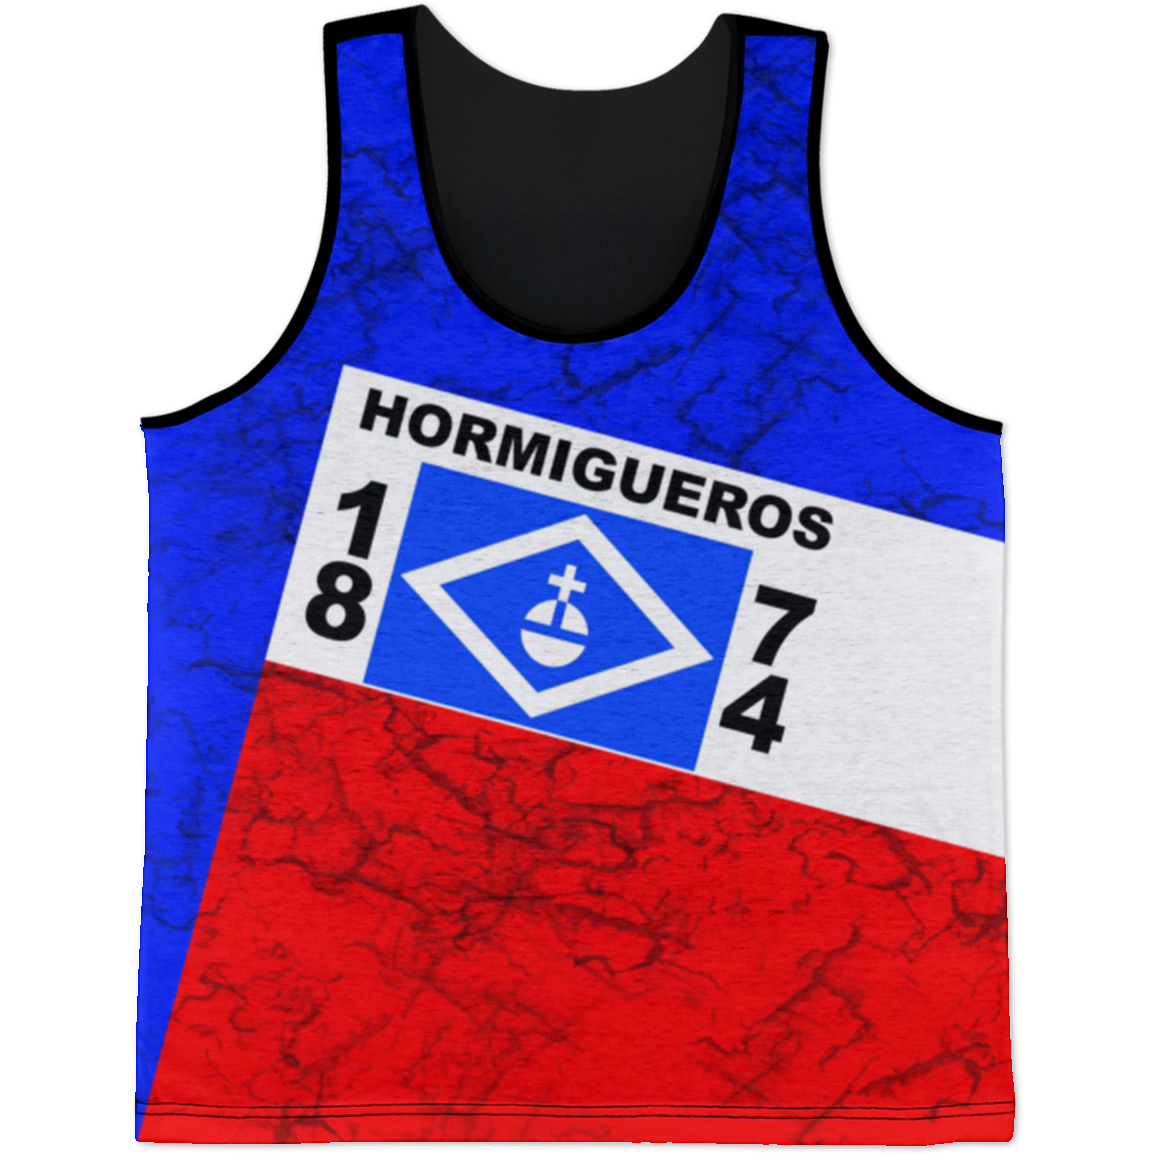 Hormigueros Tank Top - Puerto Rican Pride